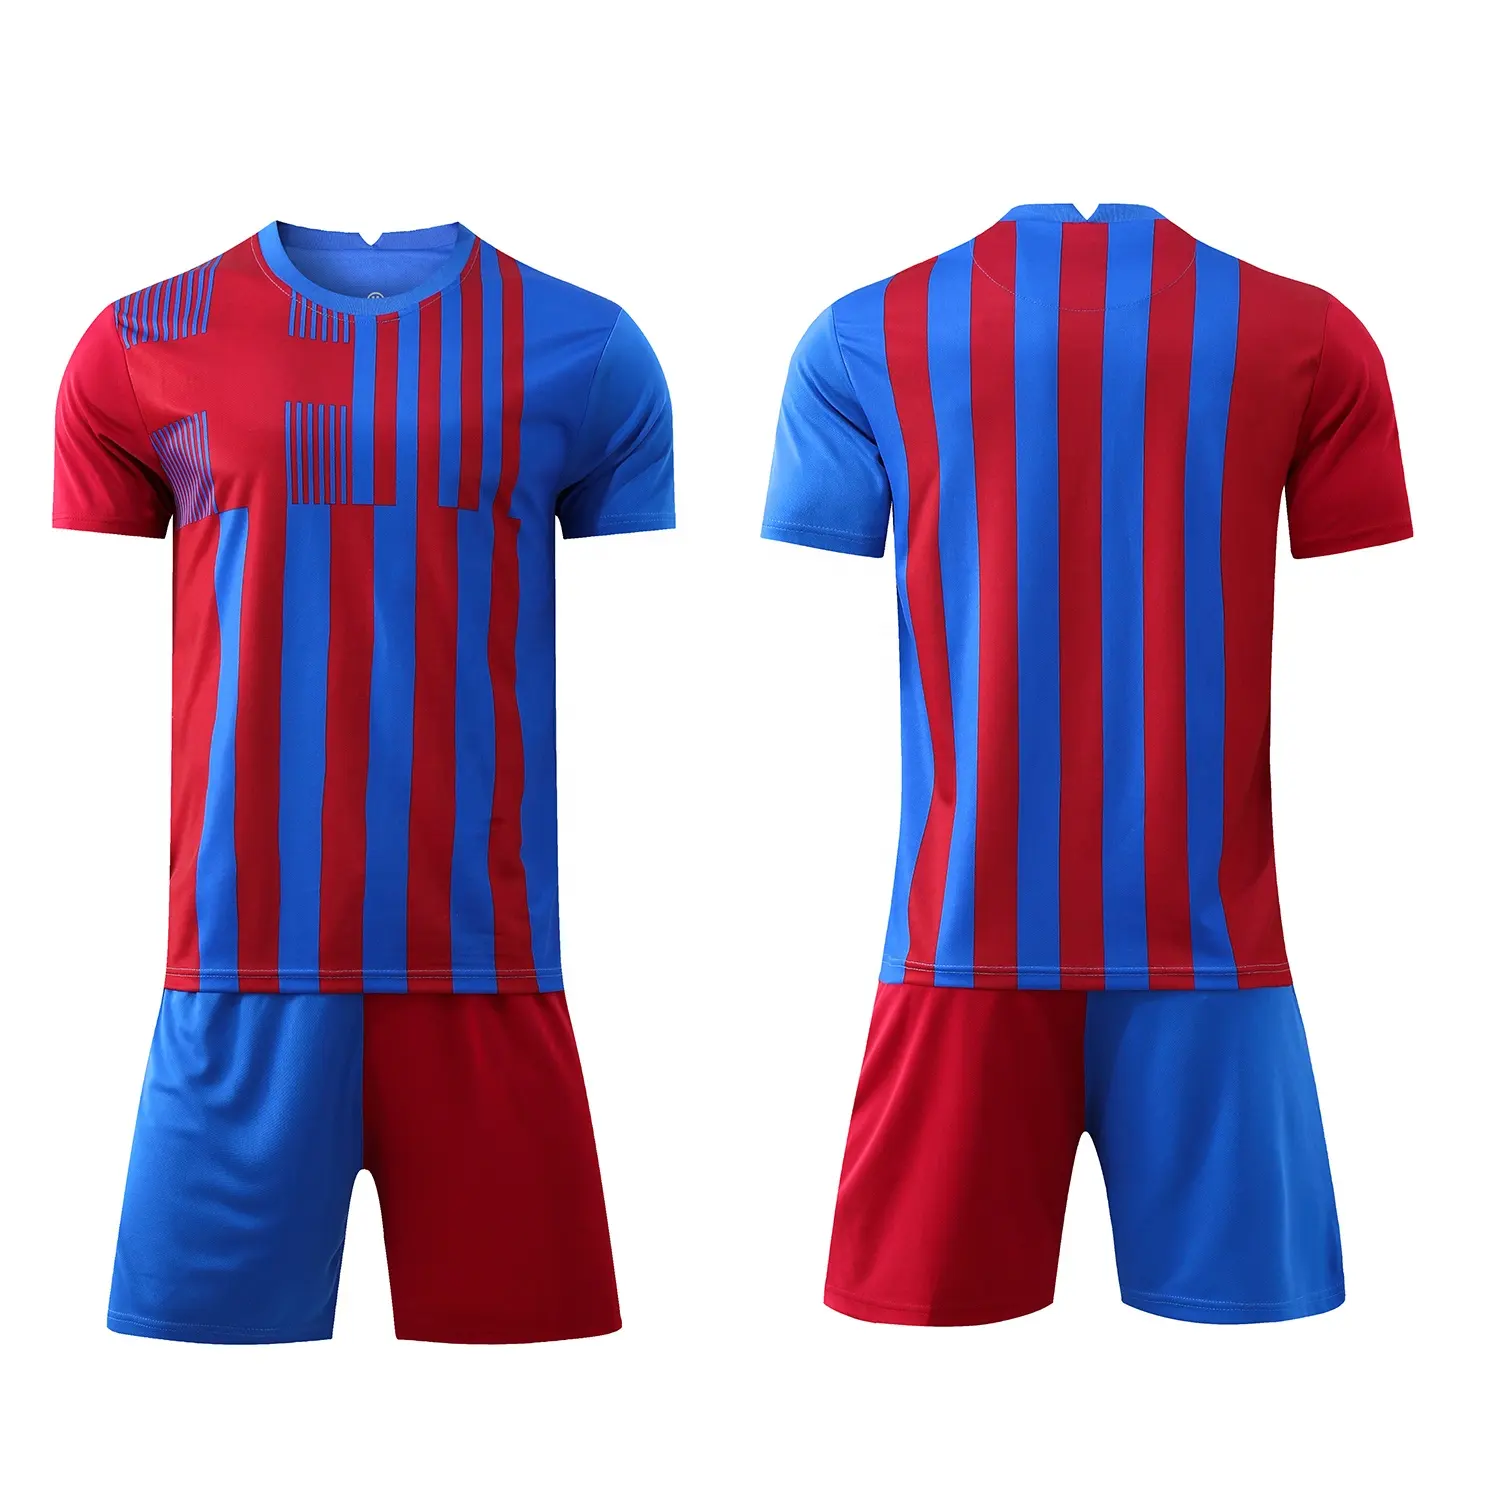 Novo modelo Homem grau tailandês qualidade futebol jersey em estoque camisas de futebol Homens + Crianças Conjuntos